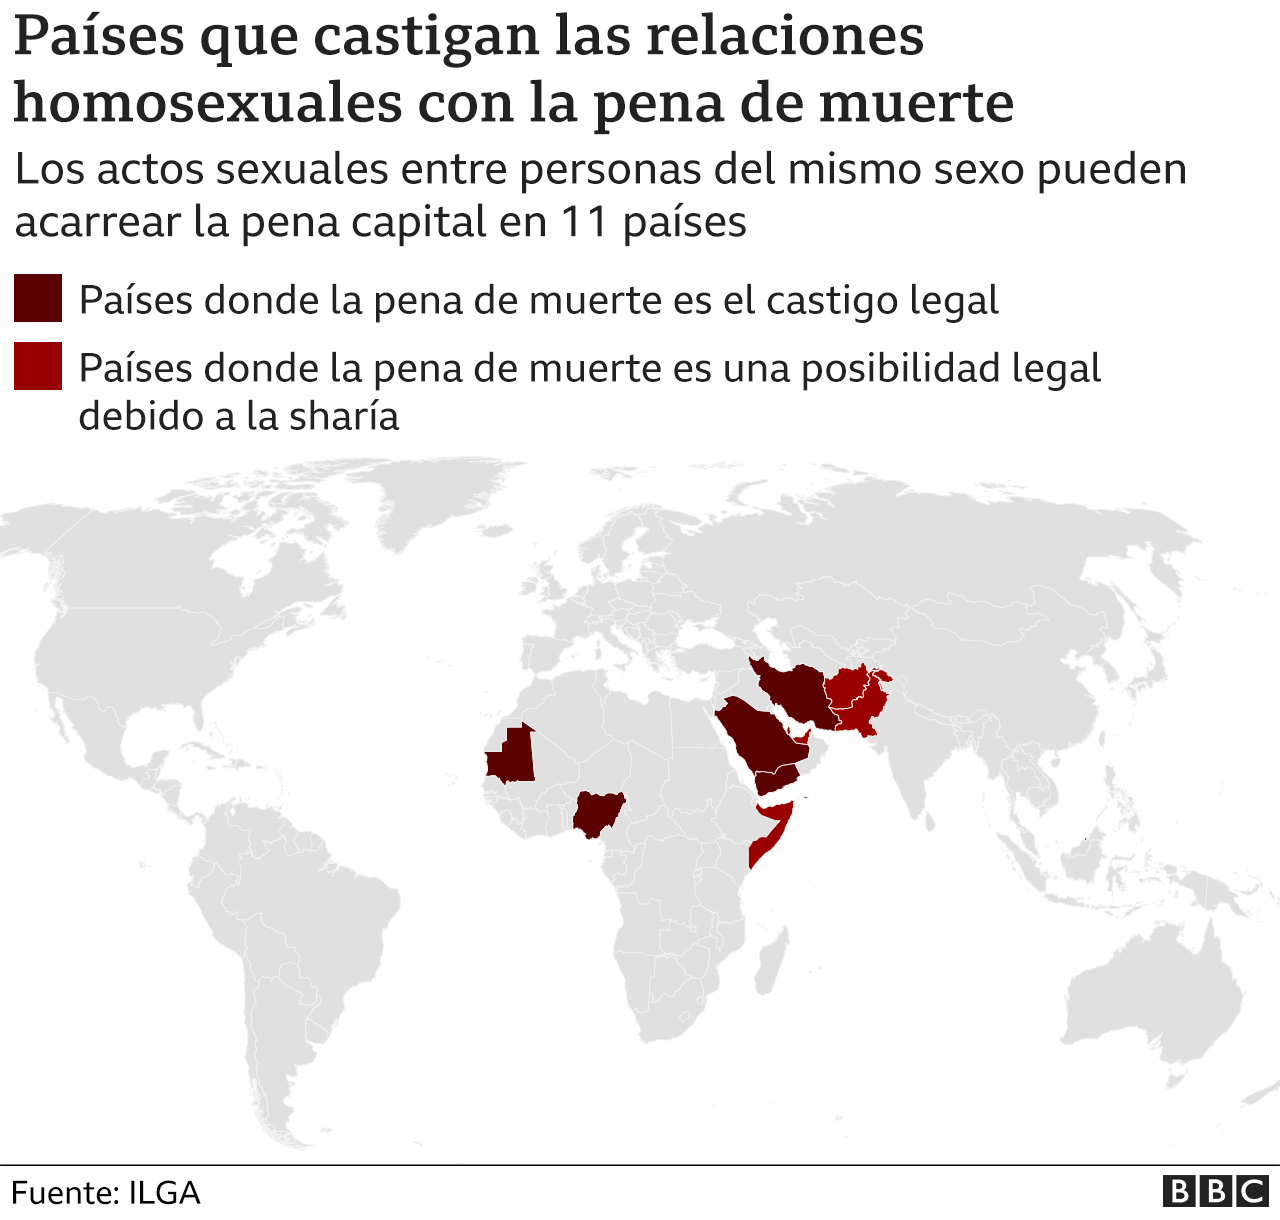 Mapa con los países que castigan la homosexualidad con la pena de muerte.